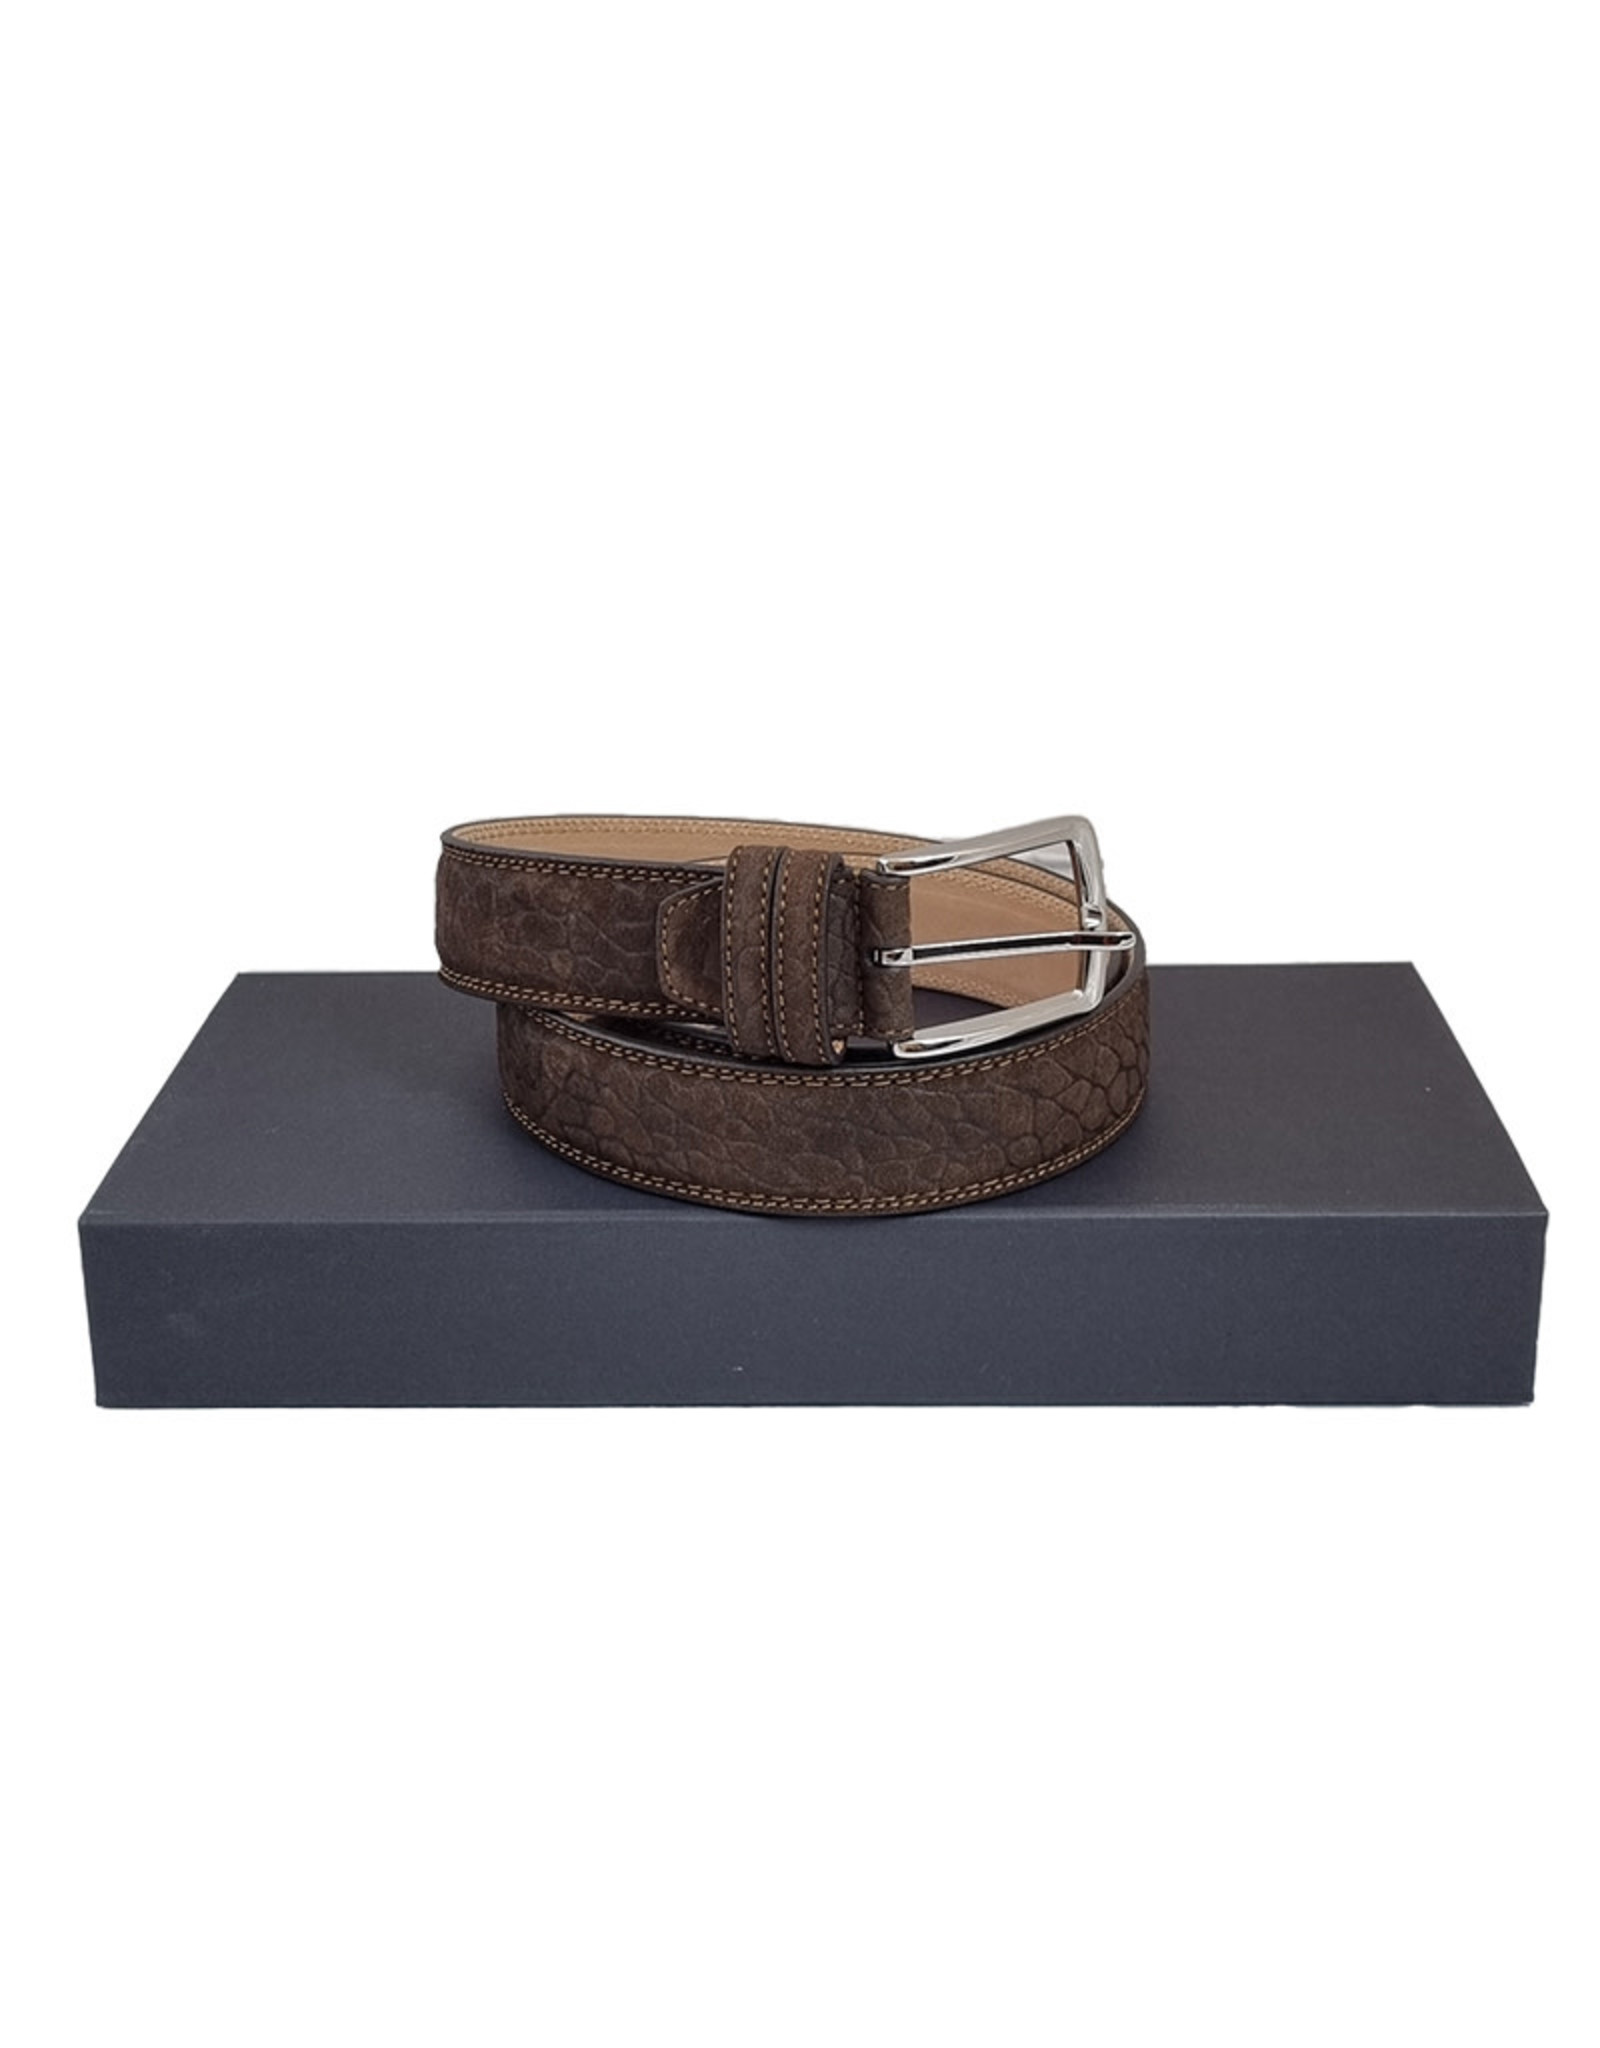 Belts+ Belts+ belt buckskin brown Bollicine